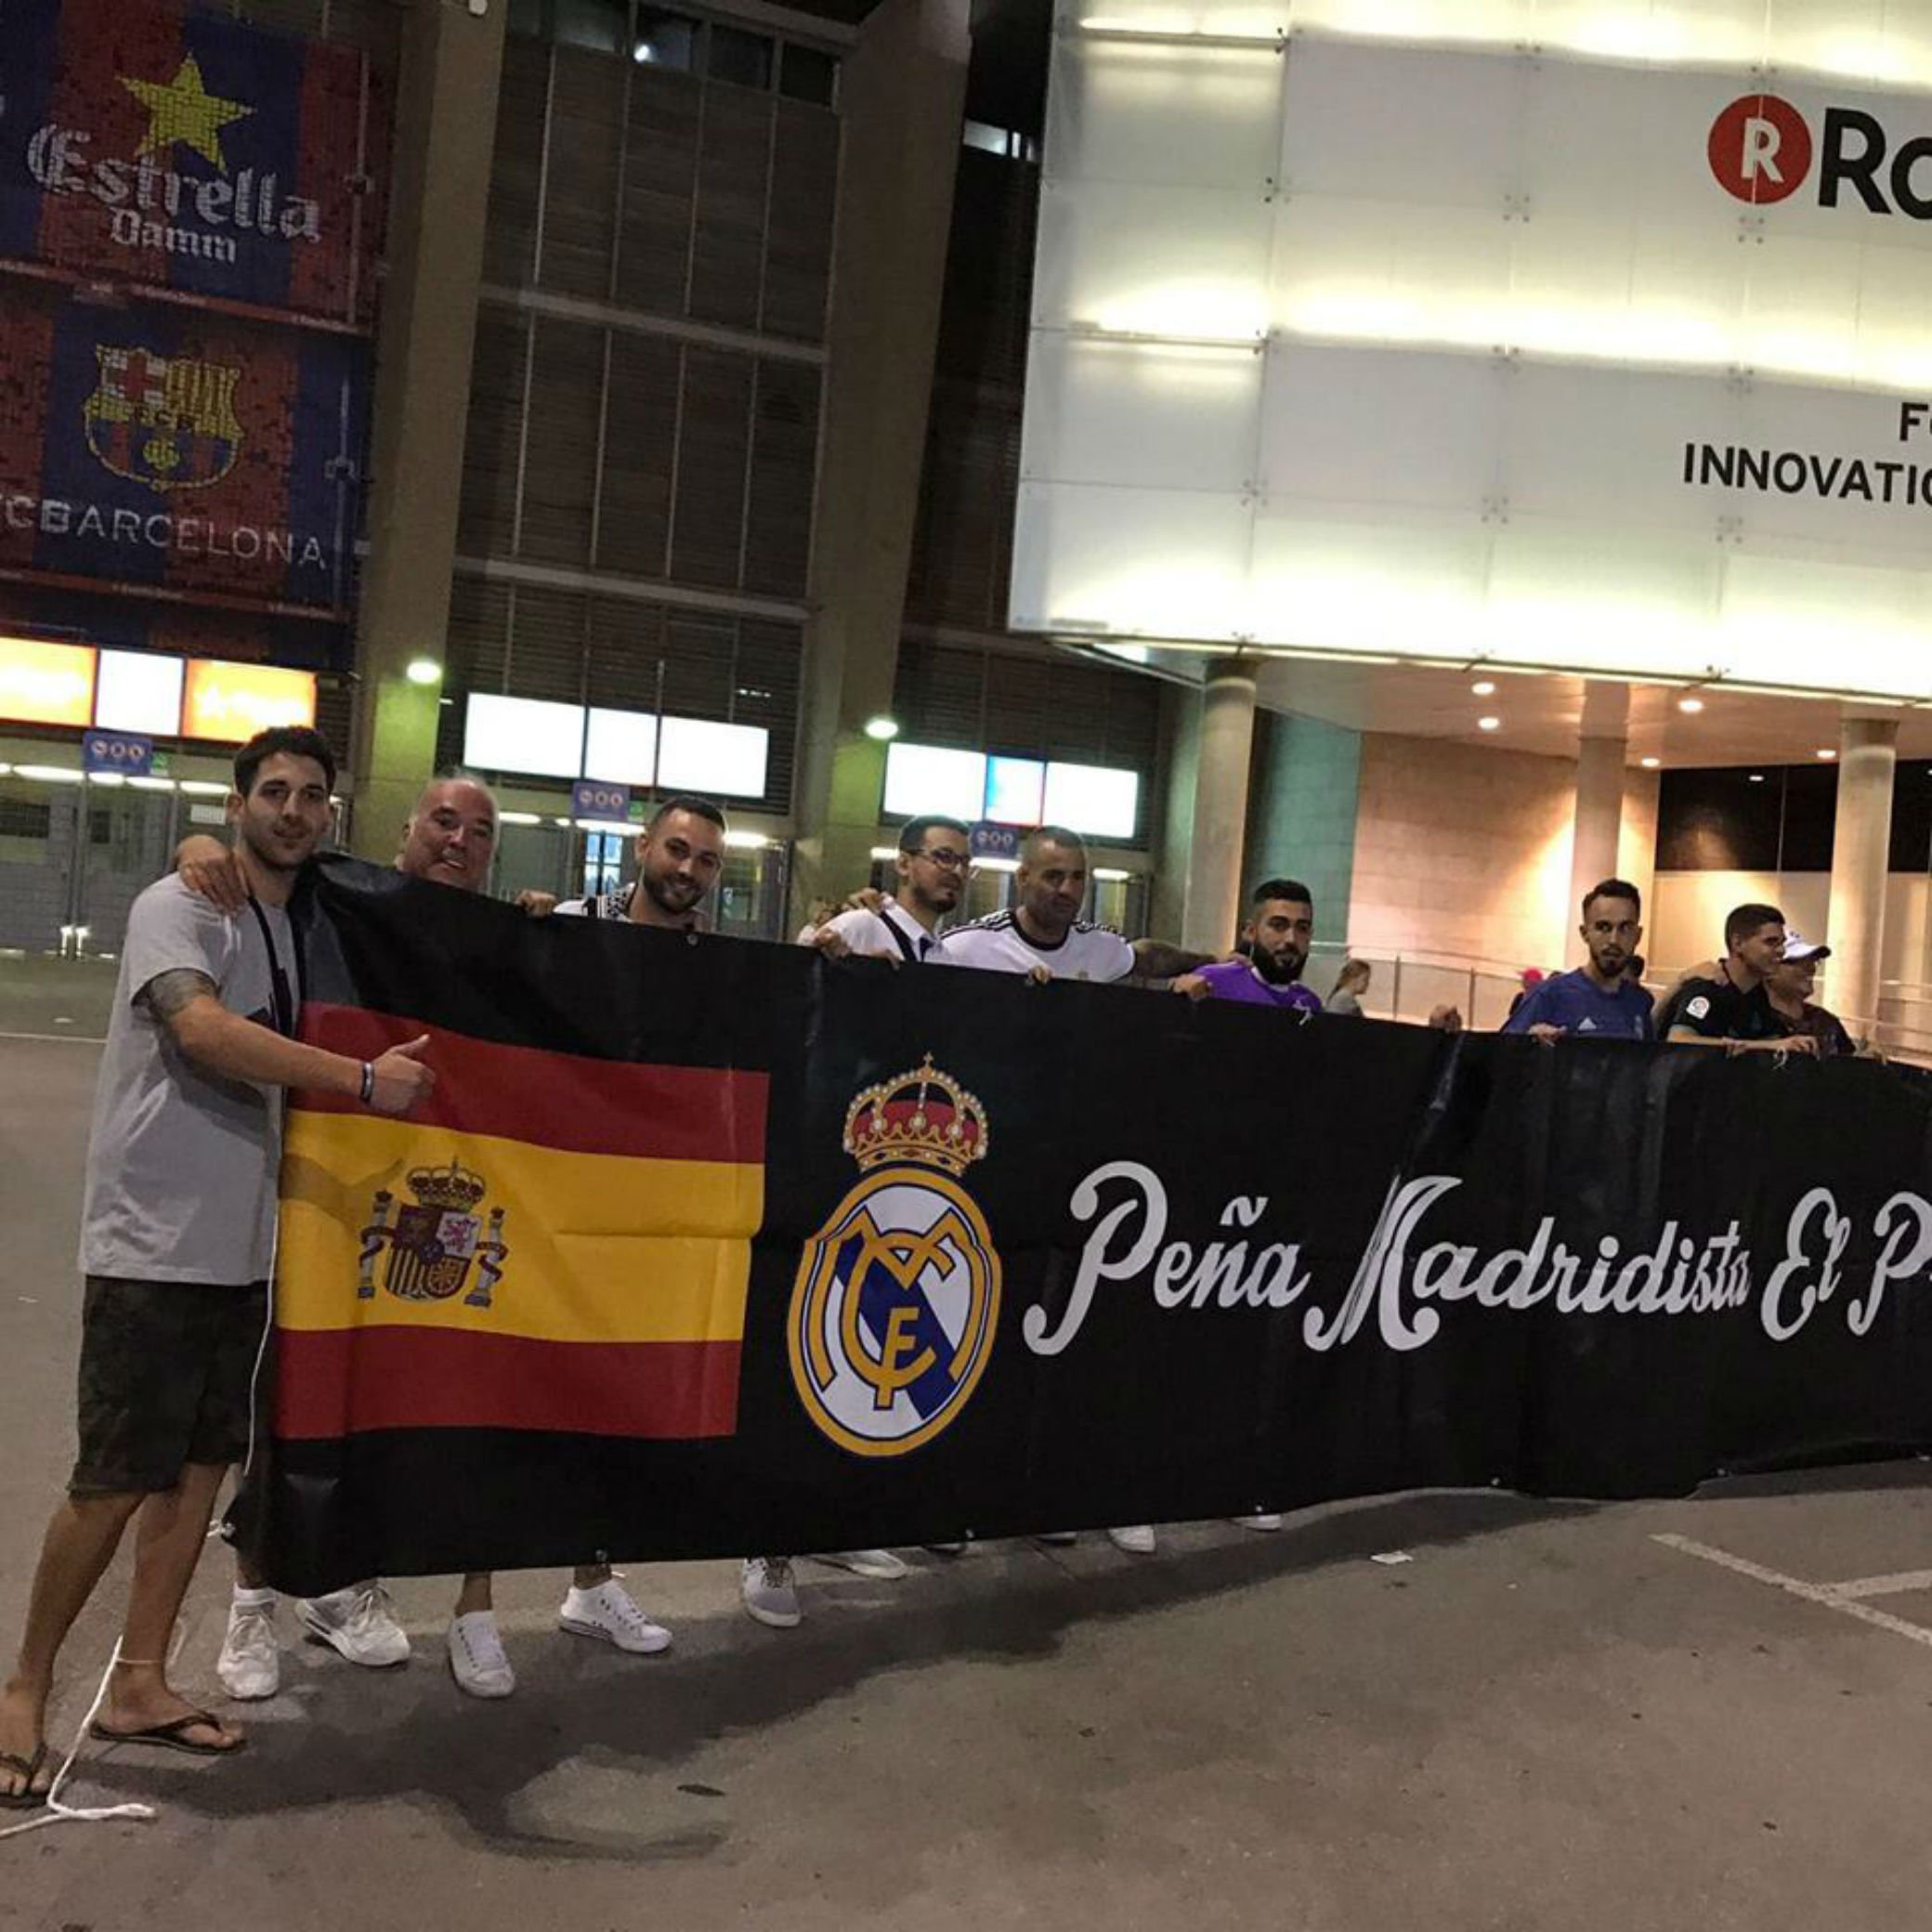 La Penya Madridista El Prat assegura que el Barça la va censurar i critica la pancarta dels presos